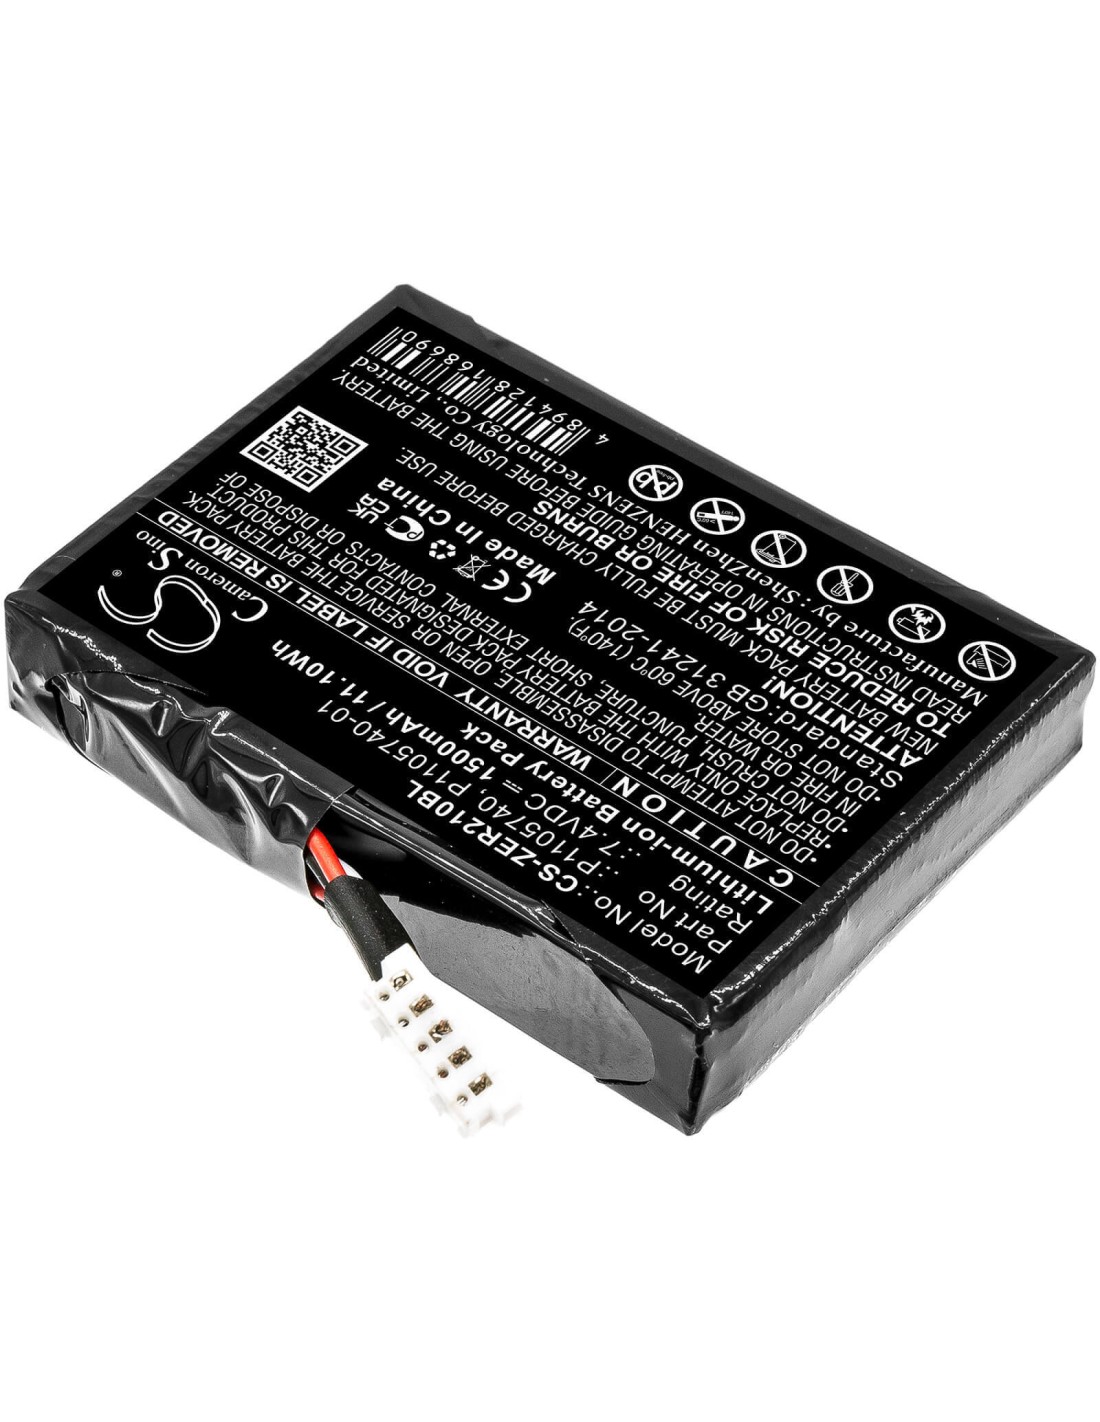 Battery for Zebra, Zq200, Zq210, Zq21-a0e12ke-00 7.4V, 1500mAh - 11.10Wh